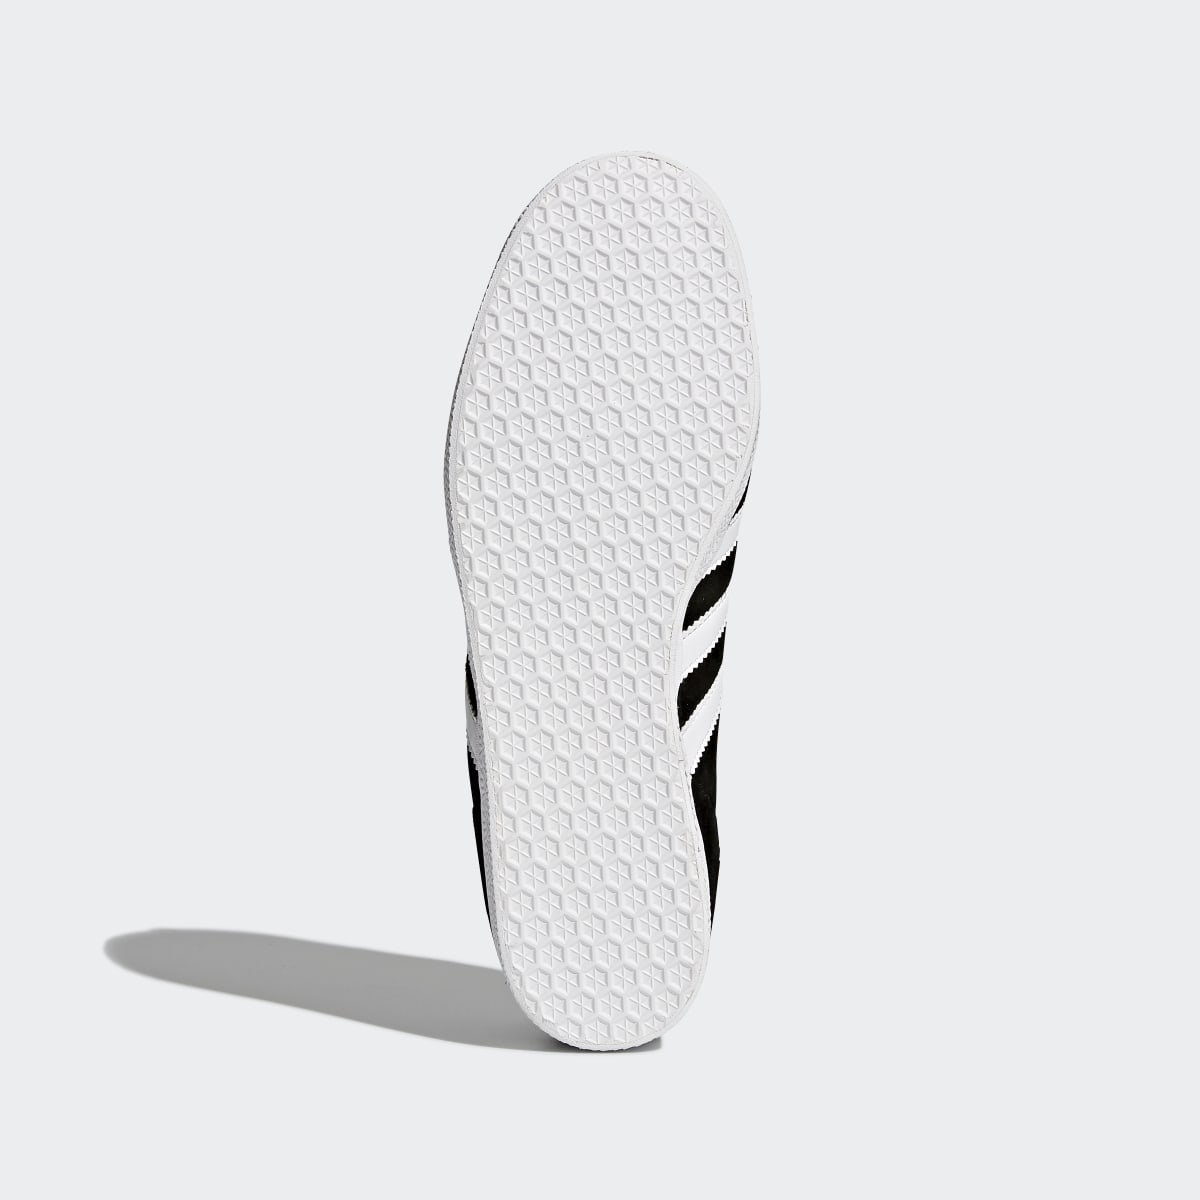 Adidas Gazelle Ayakkabı. 7